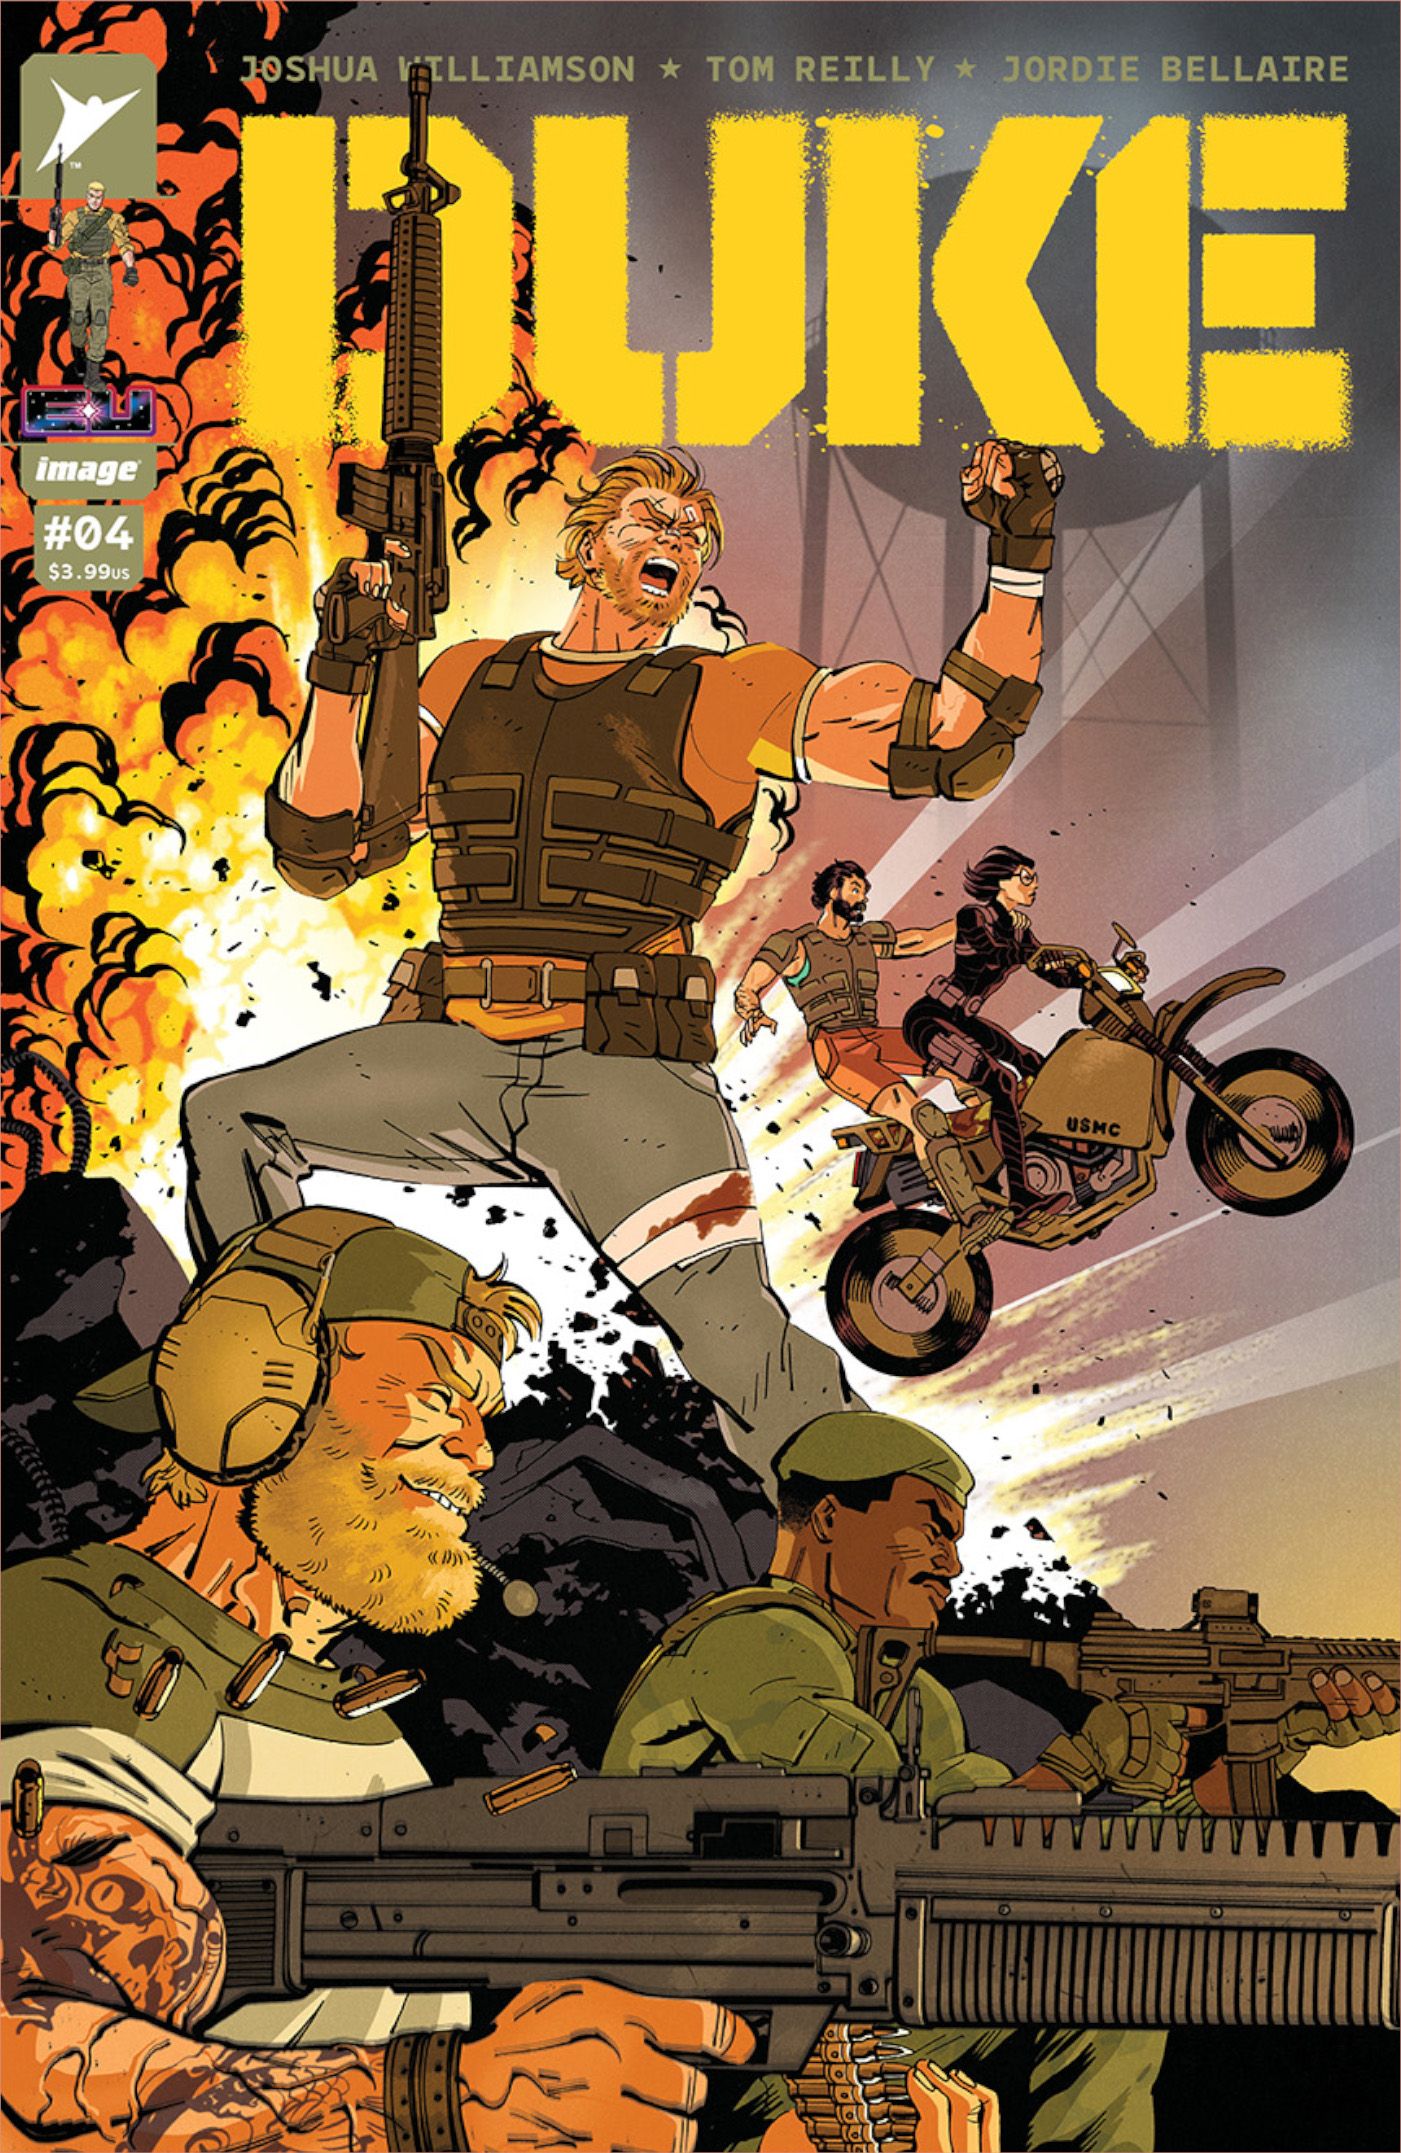 Duke #4 Cover A, uma cena explosiva repleta de motos e tanques